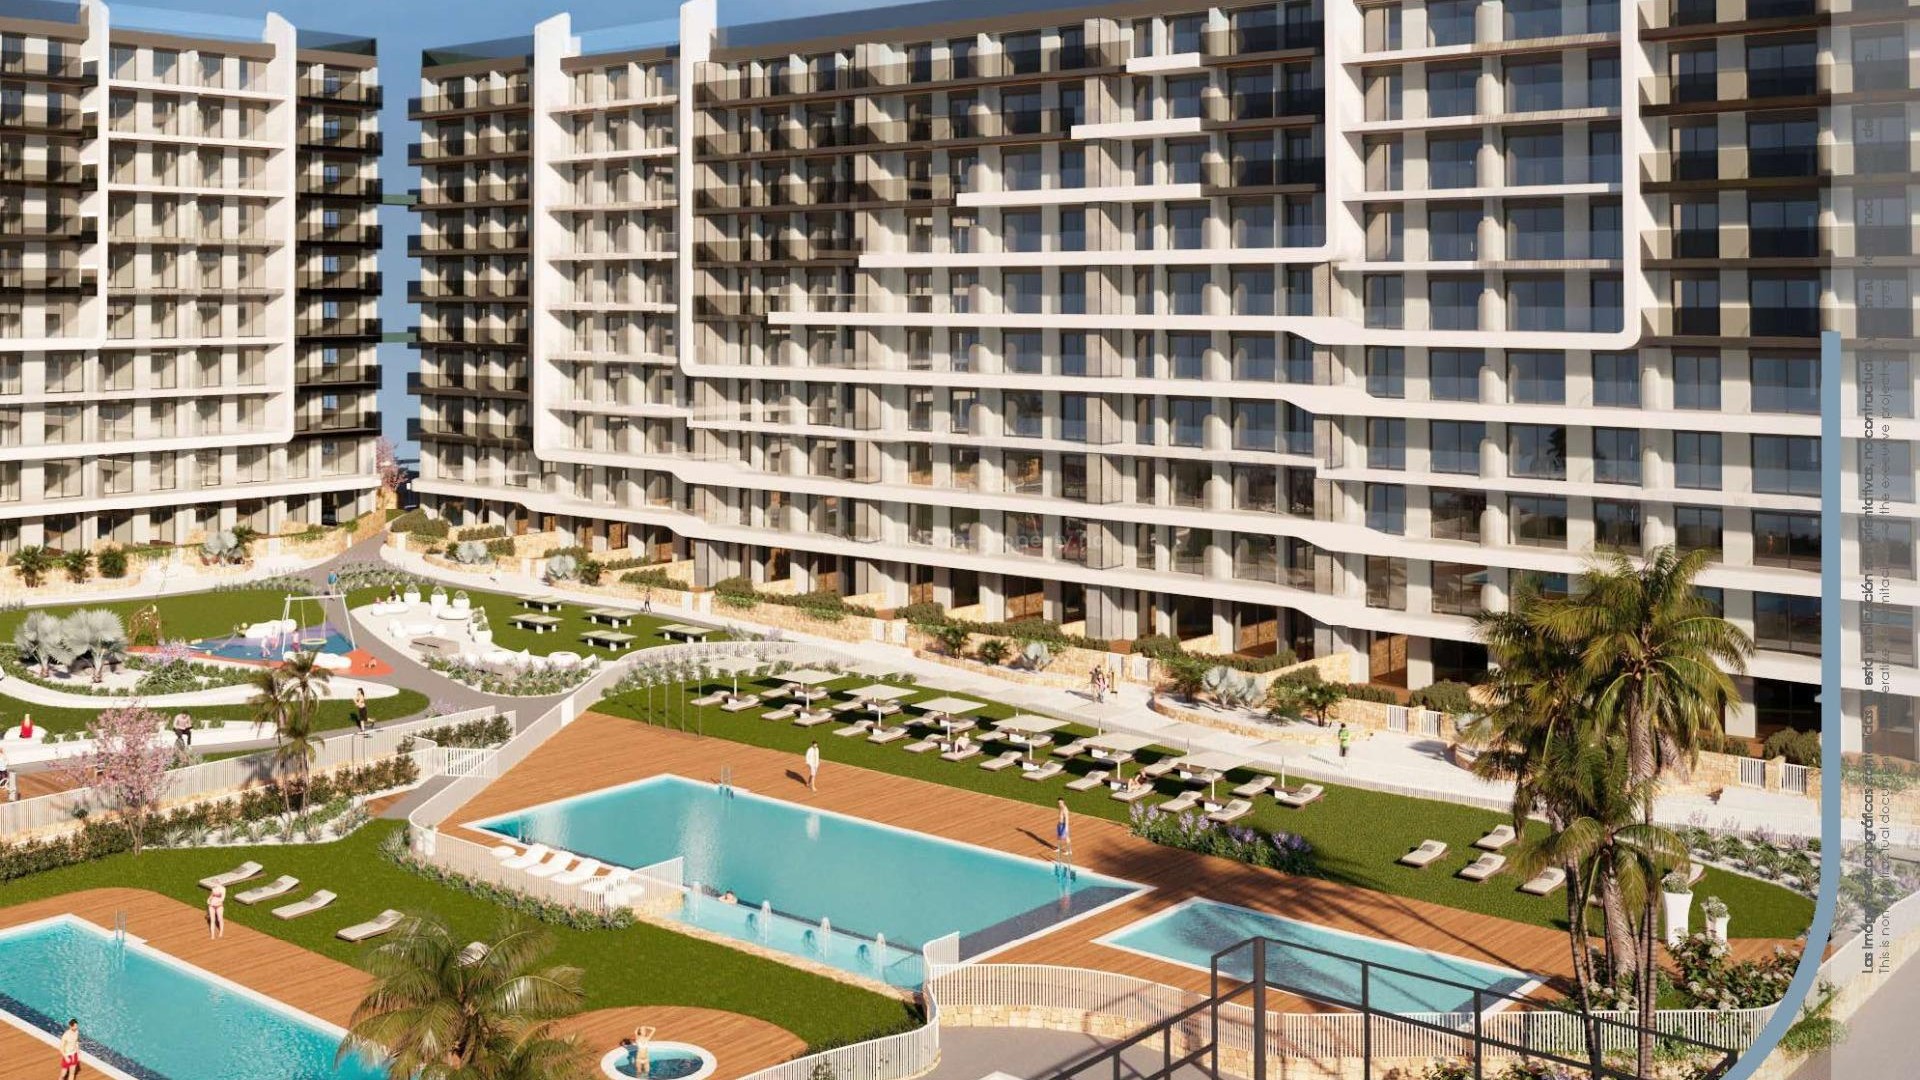 220 leiligheter med 2/3 soverom og 2 bad i Punta Prima, store terrasser, første etasje med hage og toppleiligheter med solarium, felles svømmebasseng